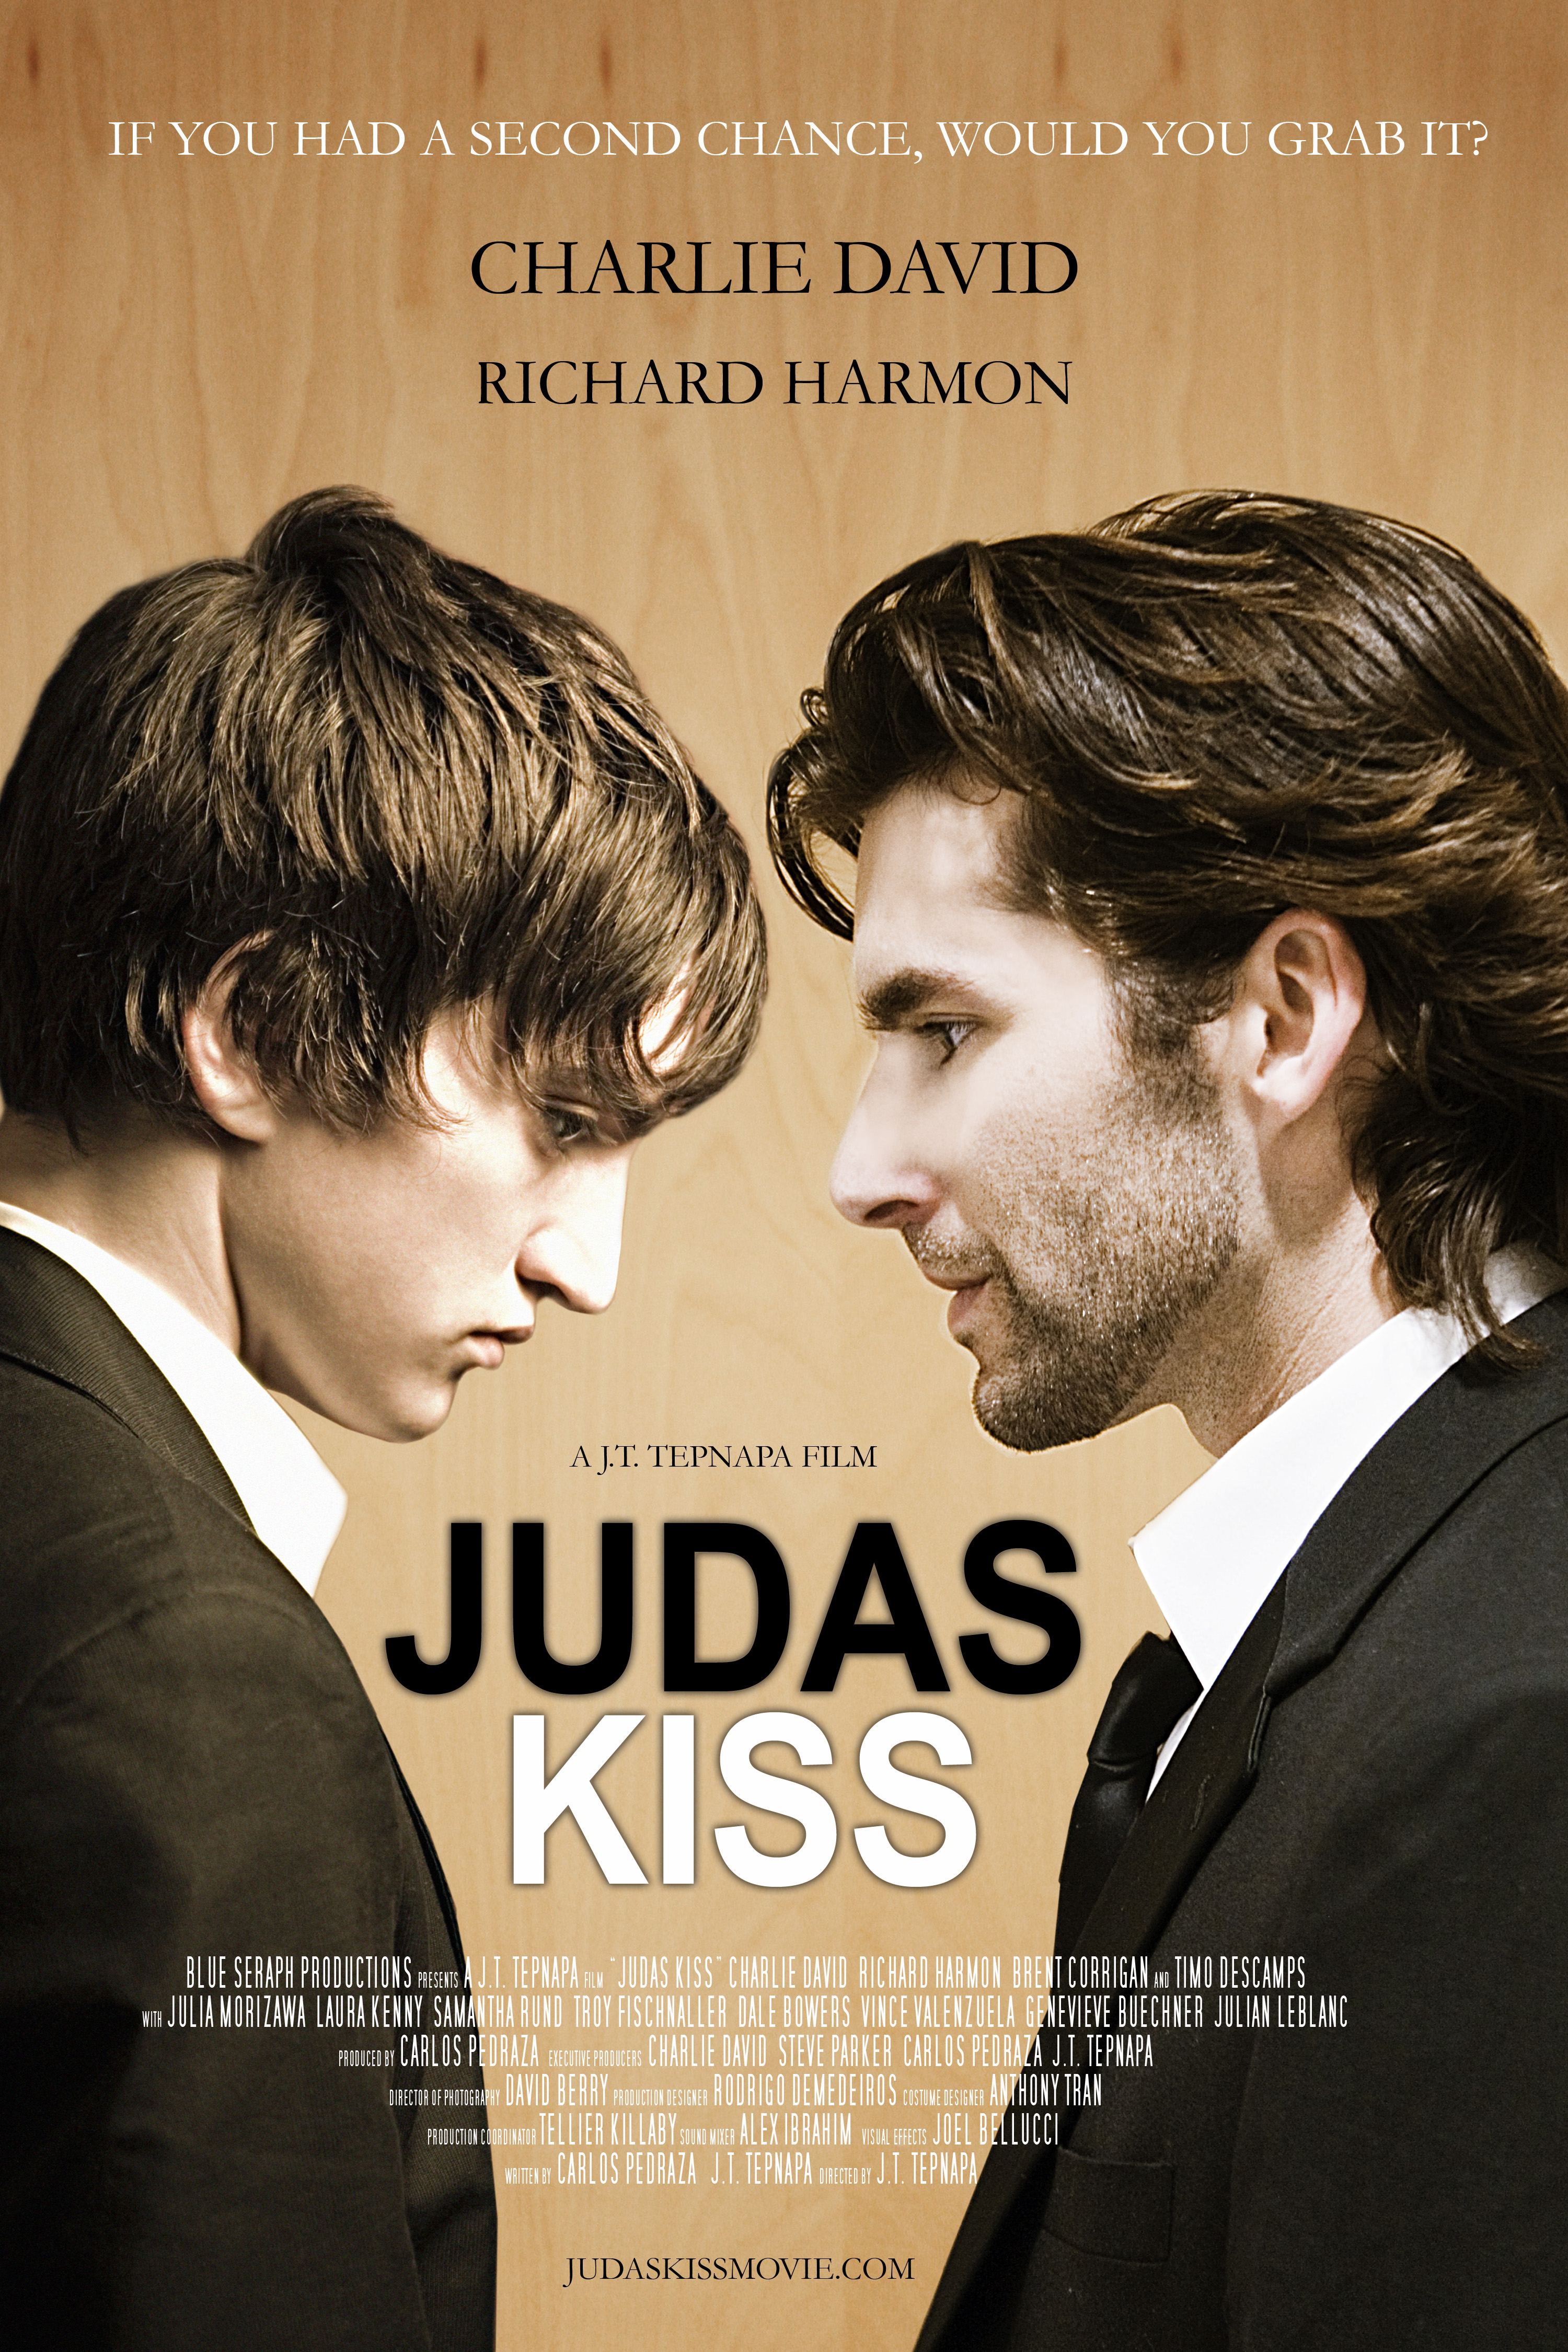 The Judas Kiss movie